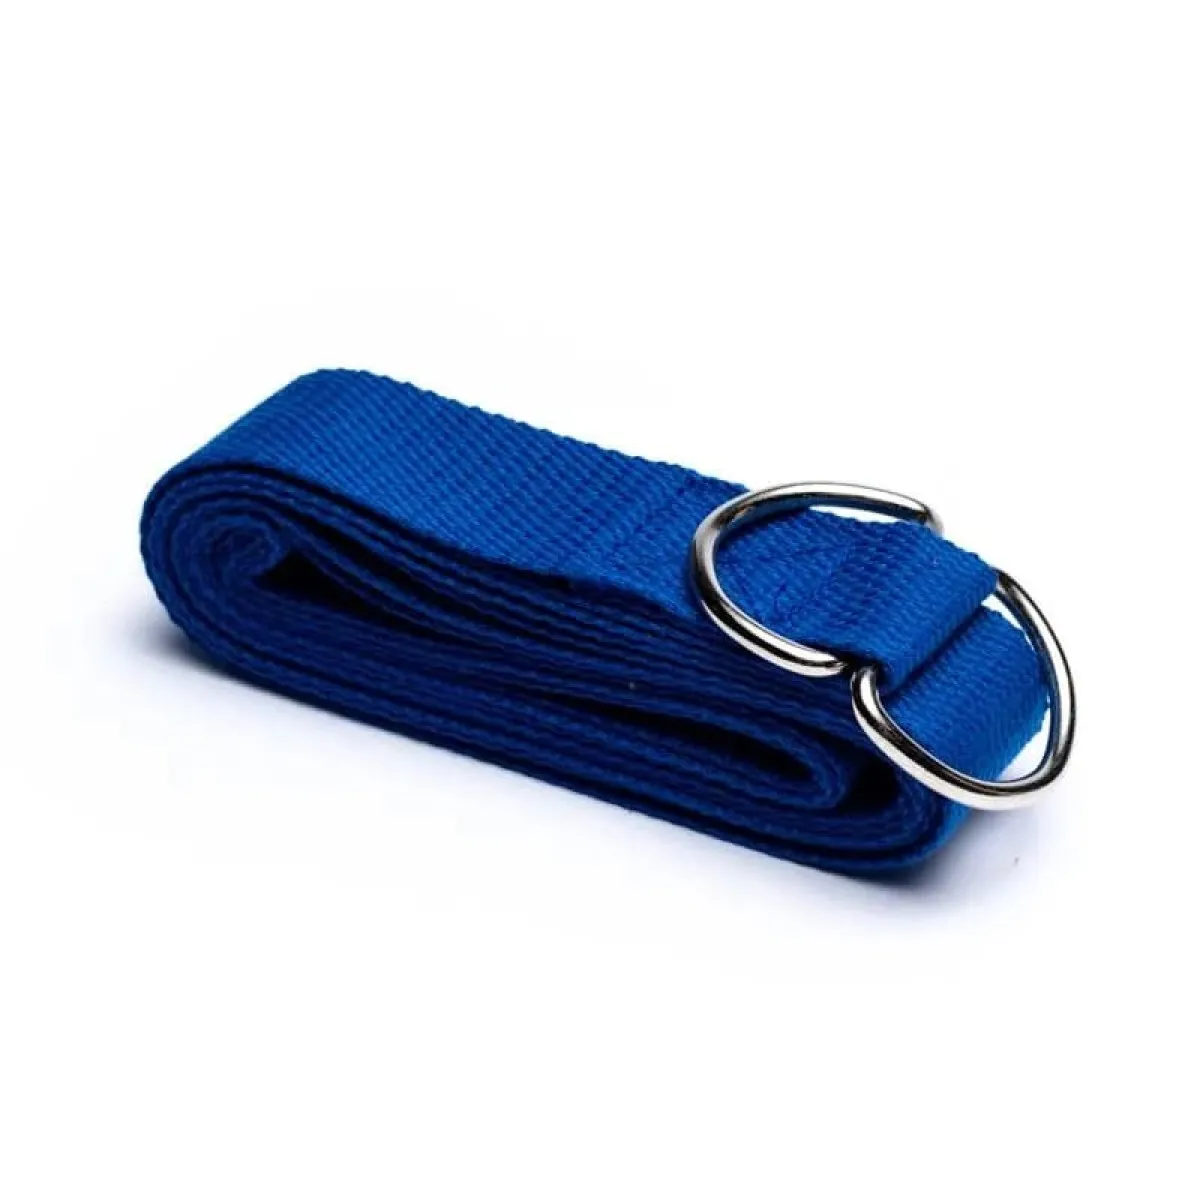 Cinturón de yoga/correa de yoga azul 250x3 cm